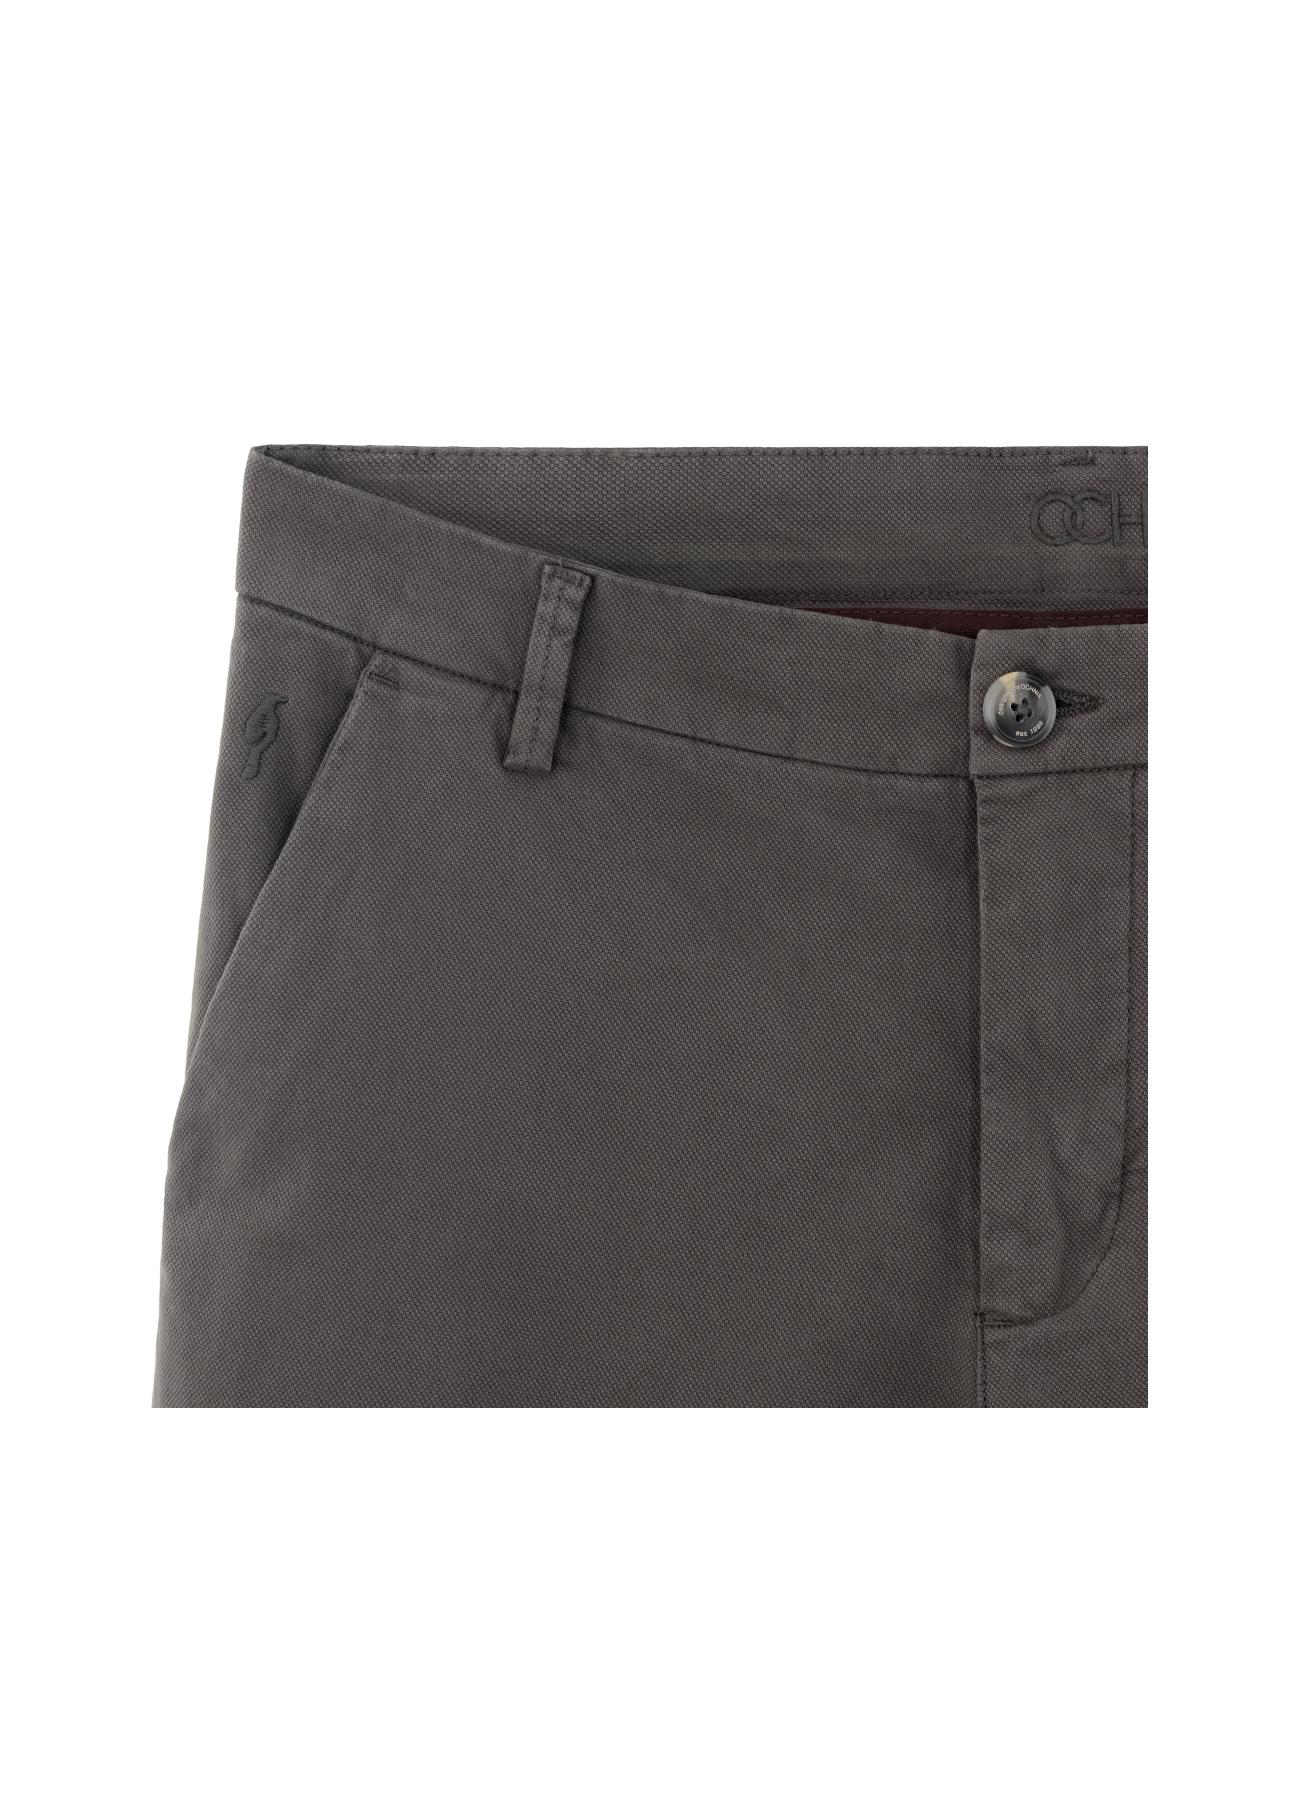 Spodnie męskie SPOMT-0058-91(Z20)